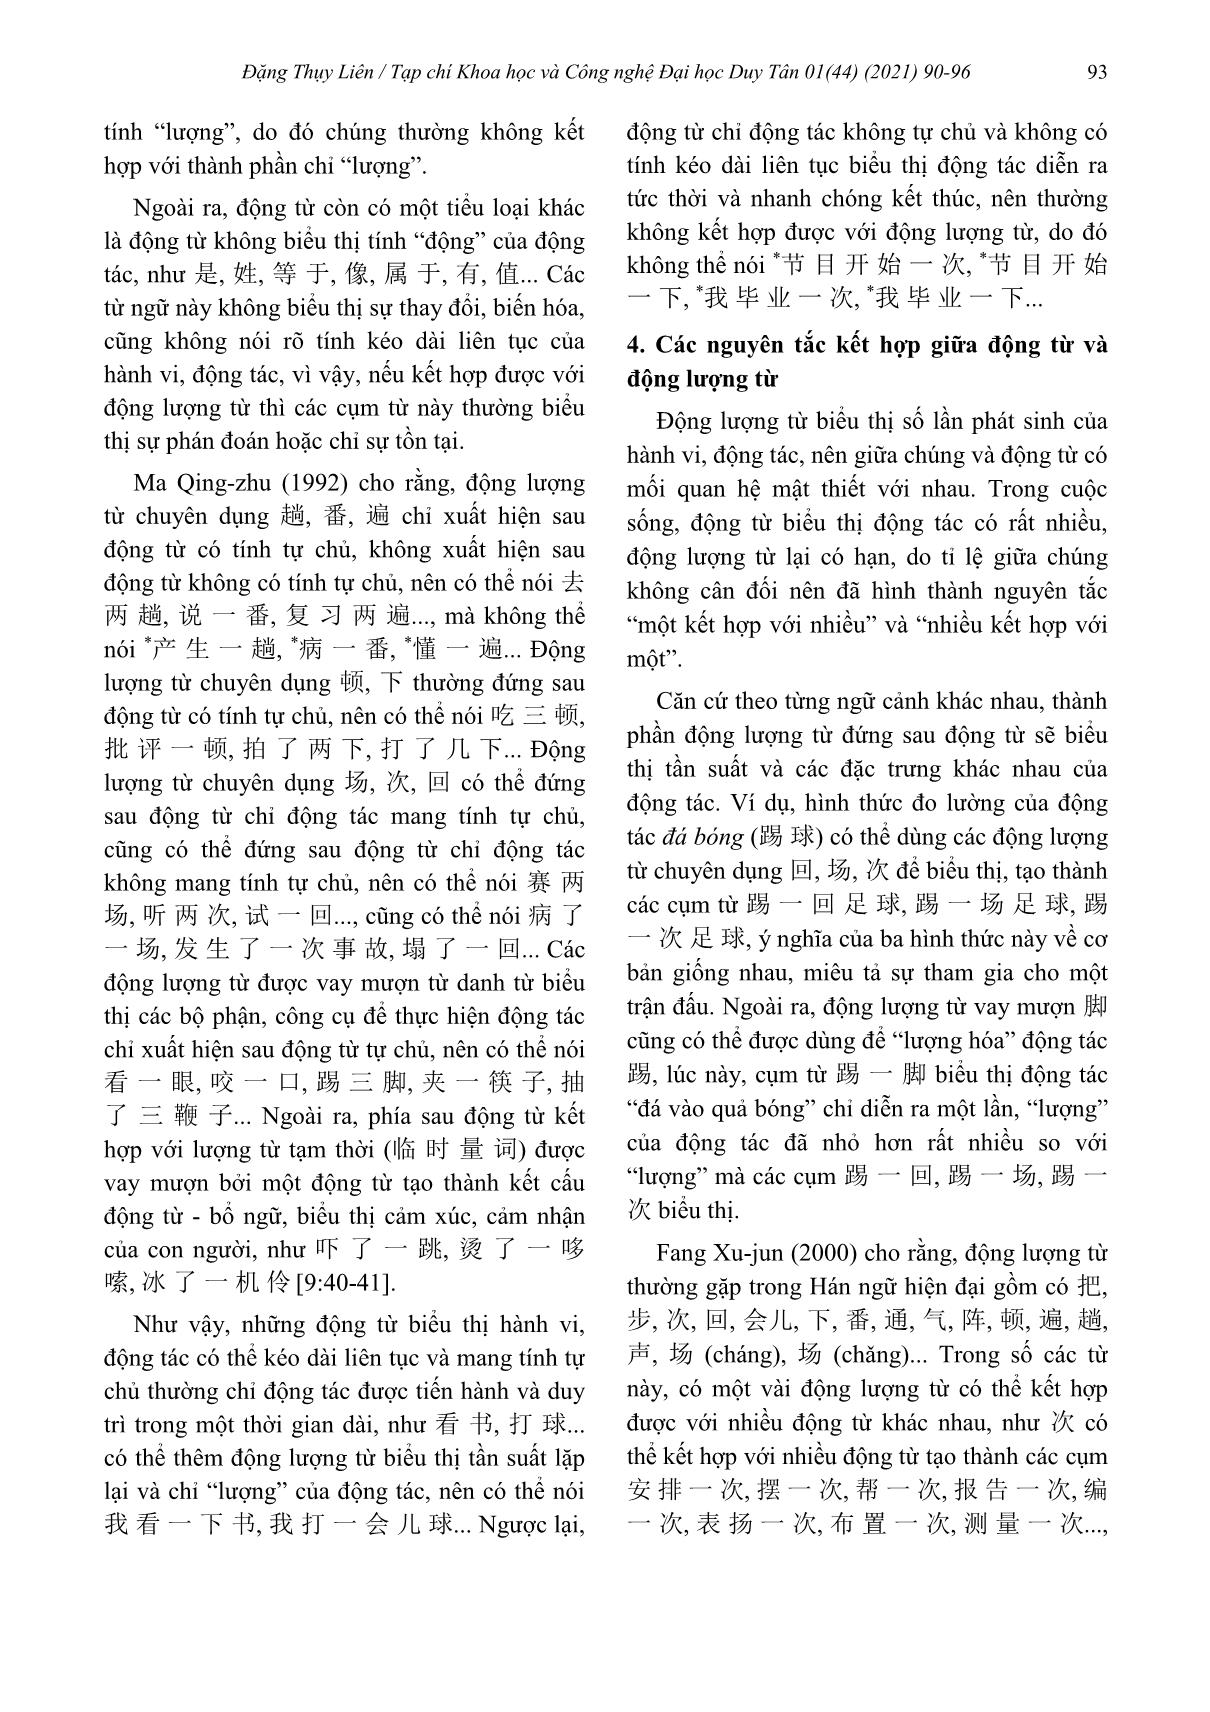 Động lượng từ trong Hán ngữ hiện đại và tri nhận chủ quan của chủ thể sử dụng trang 4